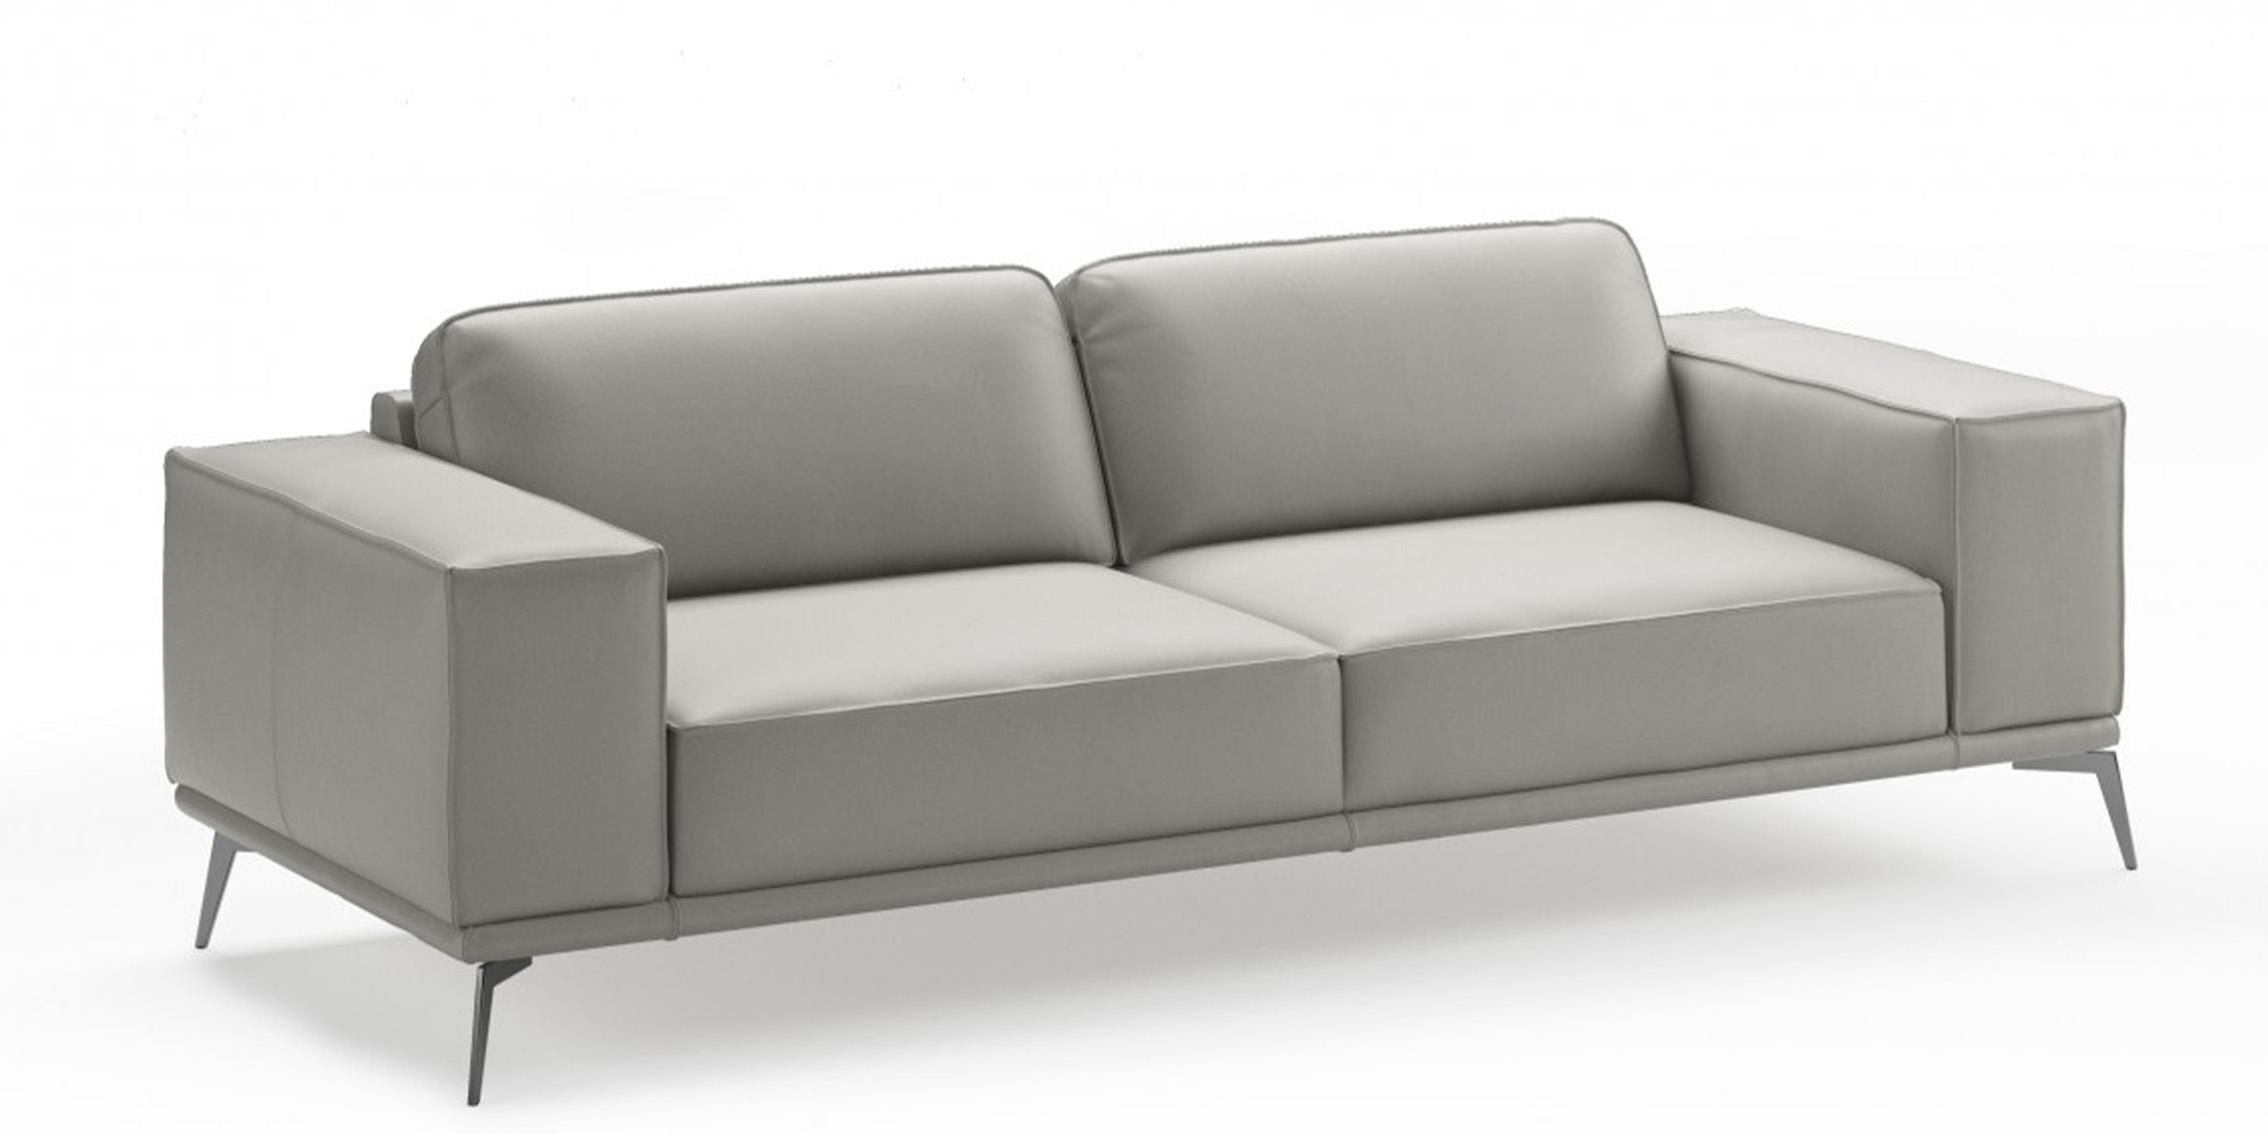 Contemporary, Modern Sofa VGCCSOHO-GRY-S VGCCSOHO-GRY-S in Light Grey Italian Leather